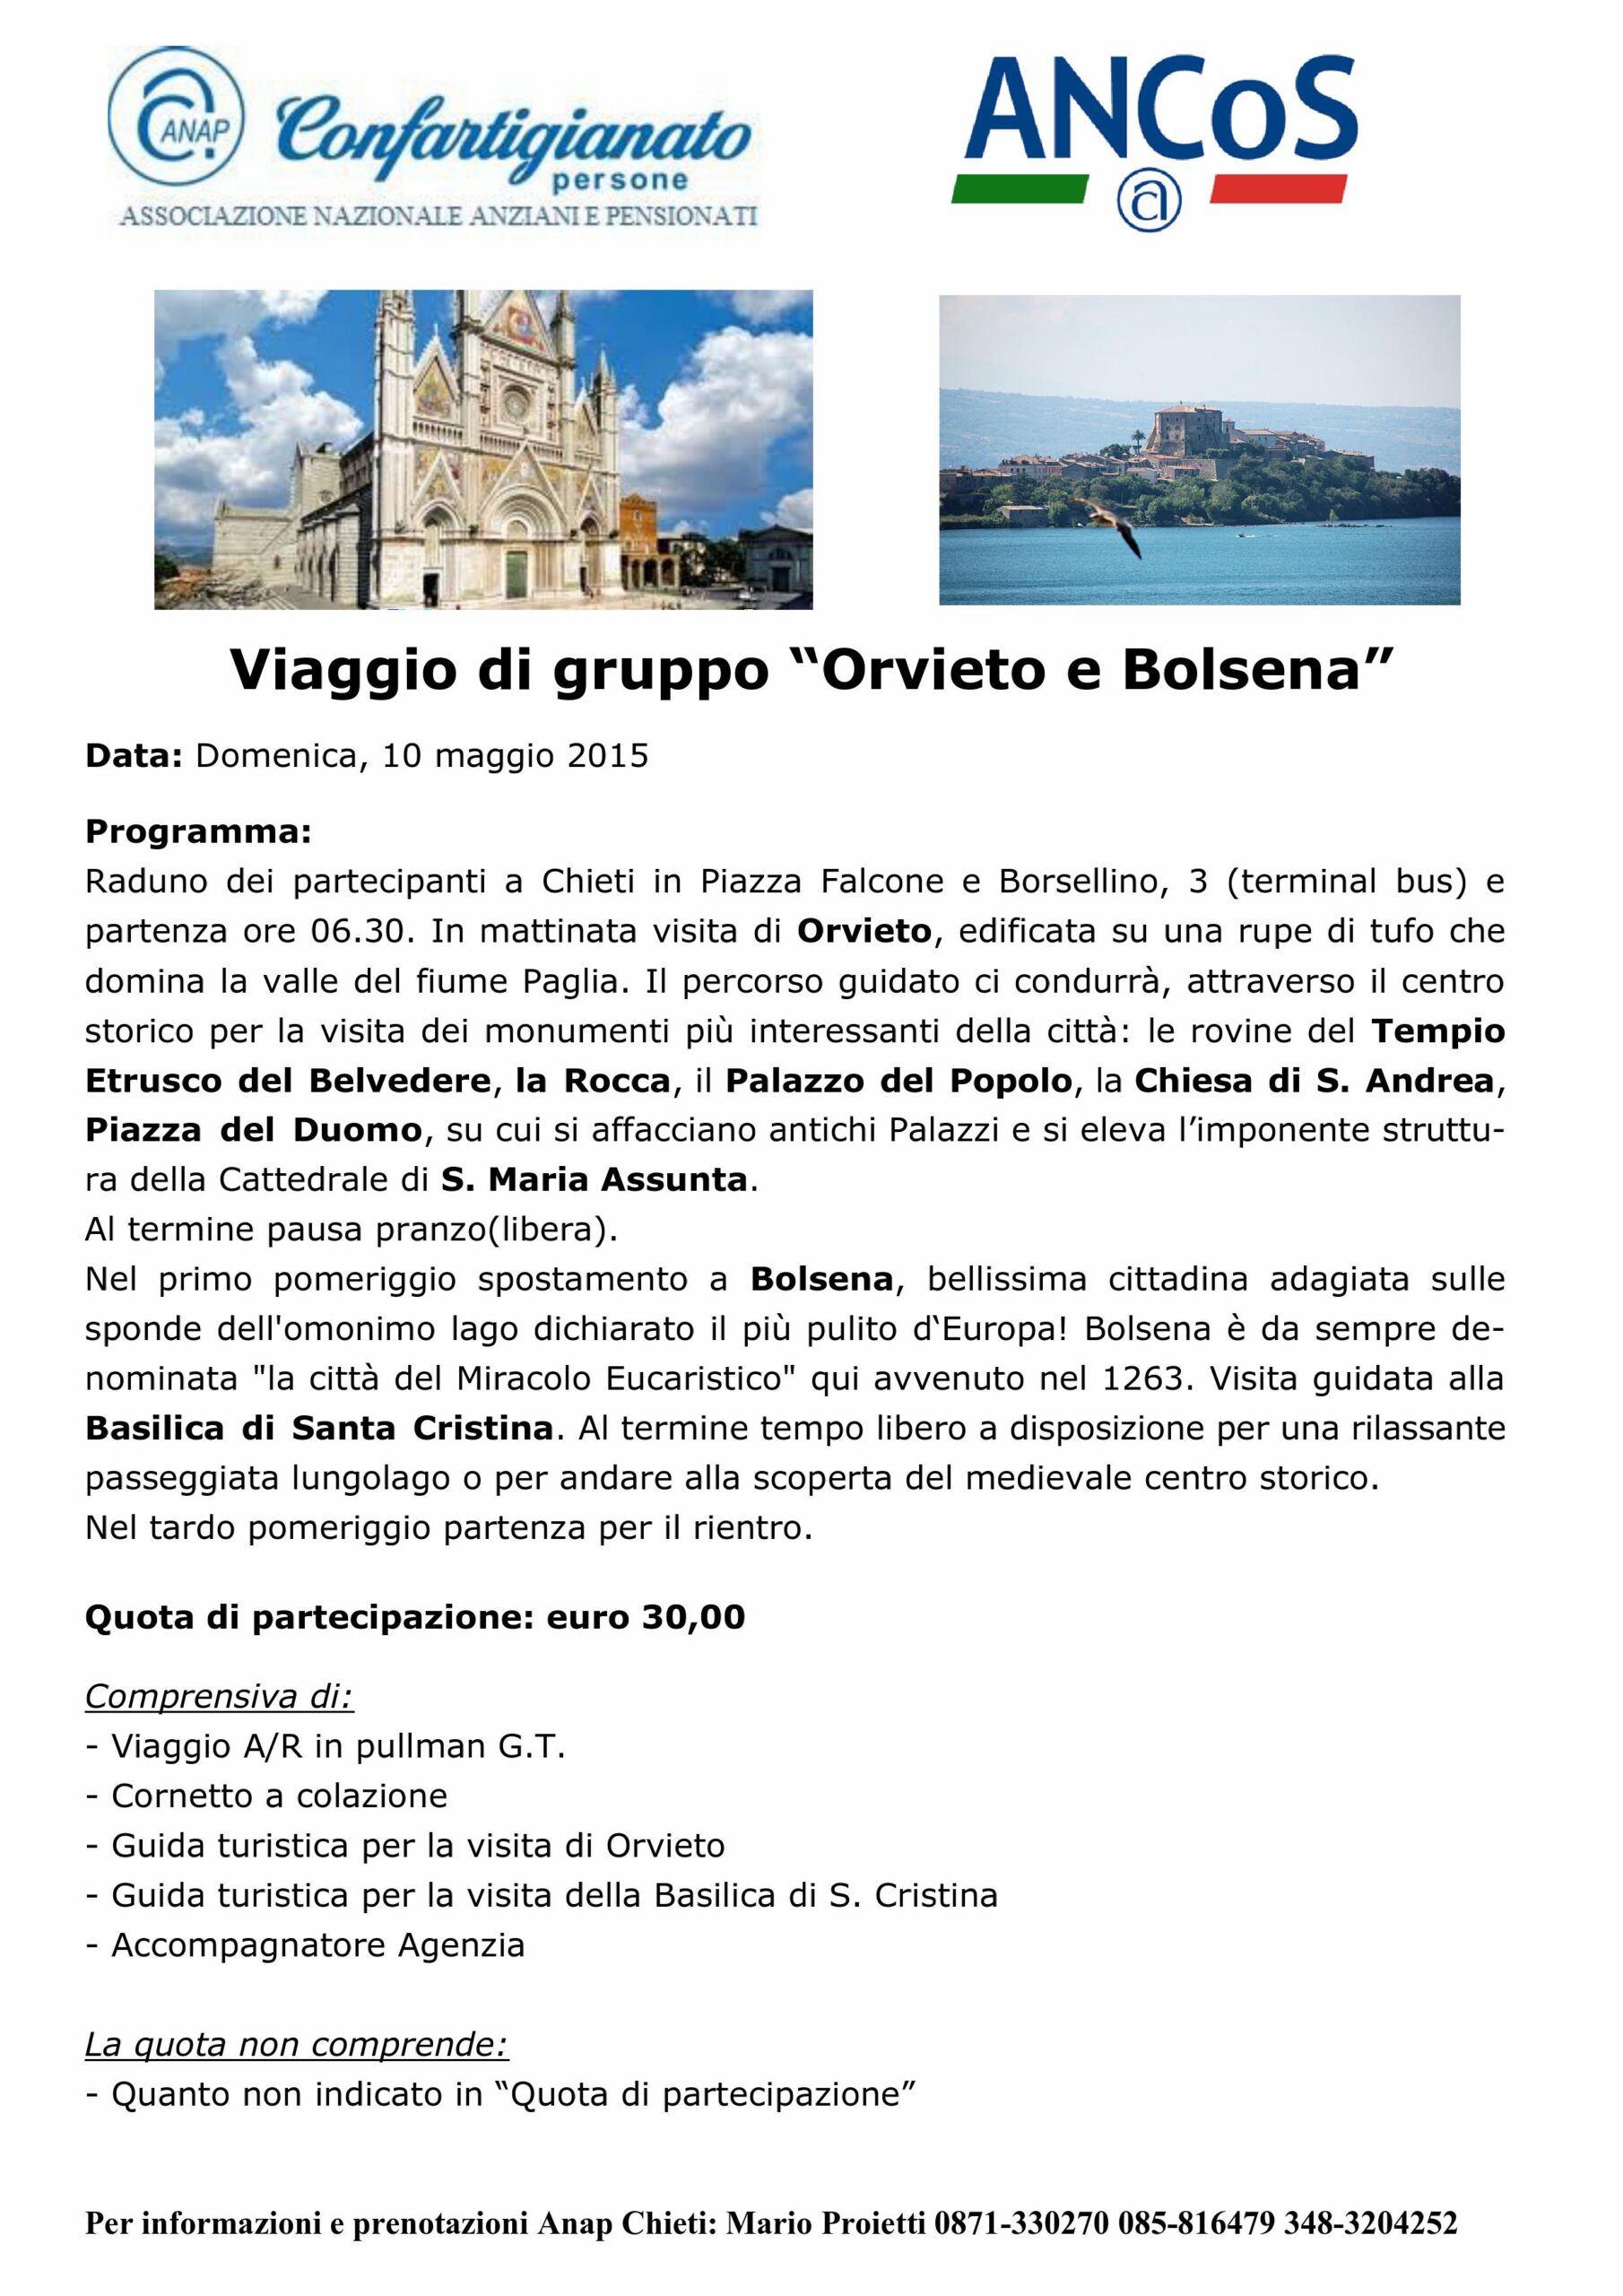 Viaggio di gruppo “Orvieto e Bolsena” – Domenica 10 maggio 2015